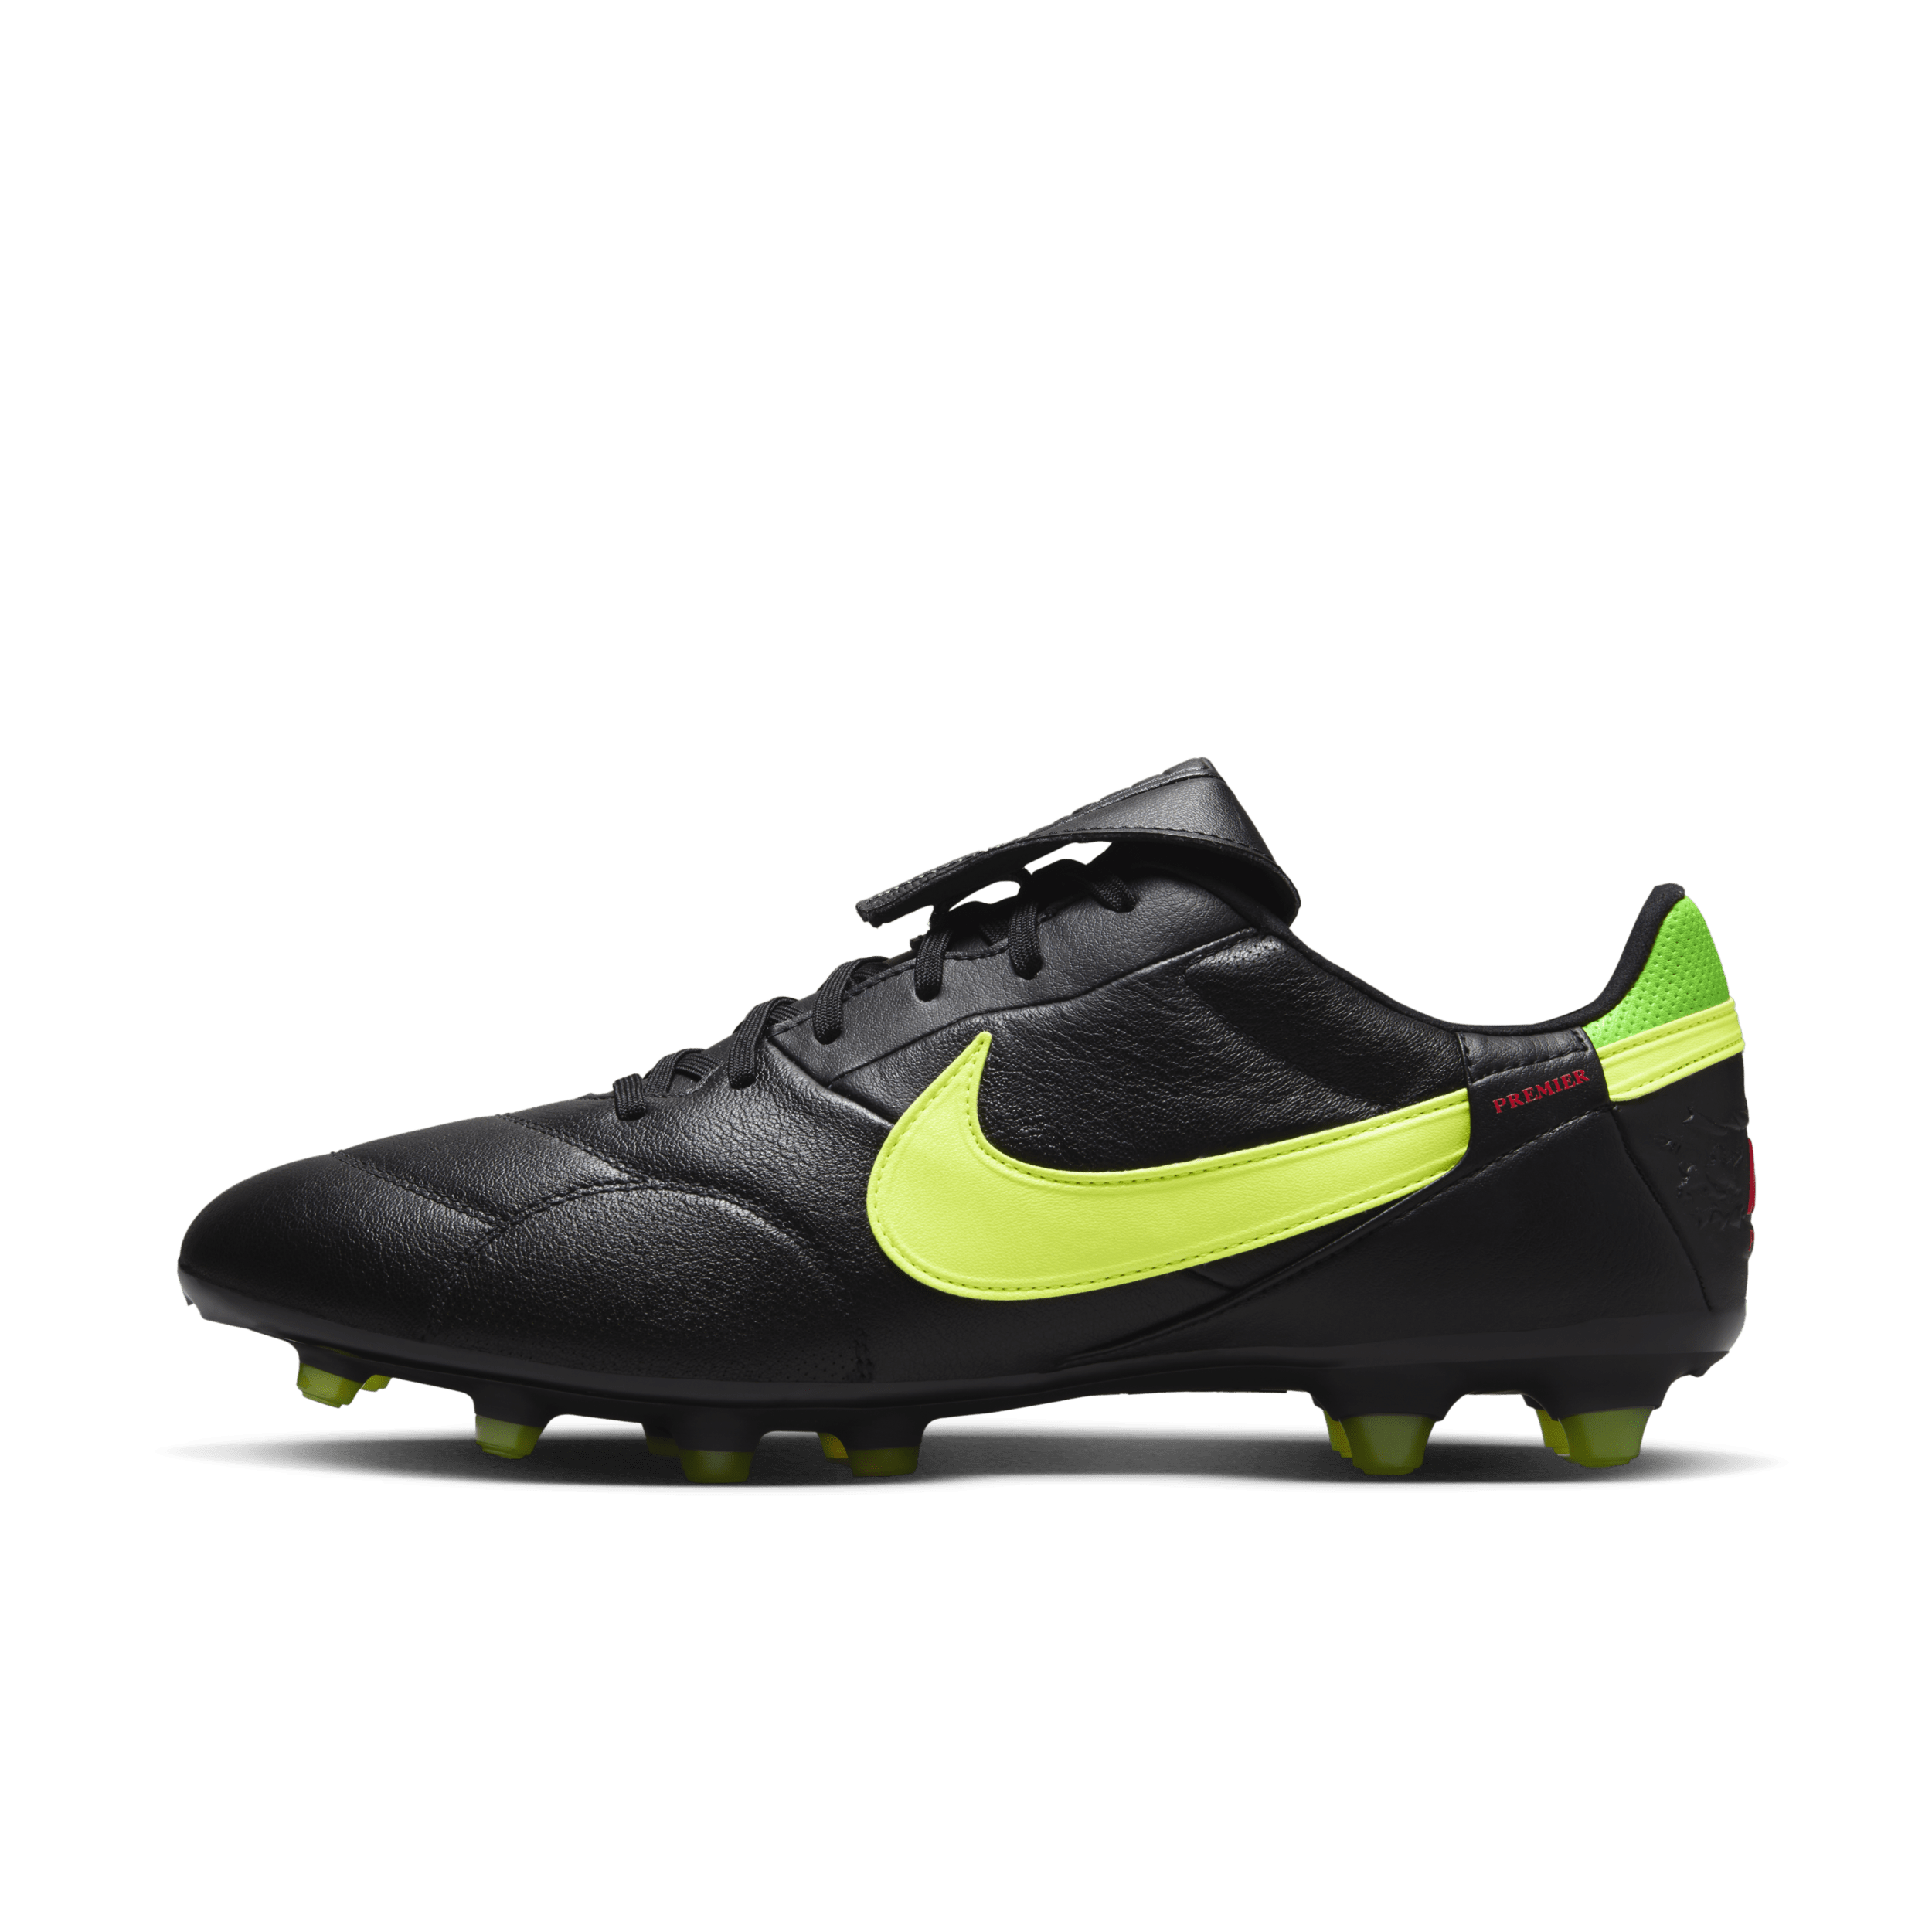 Nike Premier 3 low top voetbalschoenen (stevige ondergrond) - Zwart